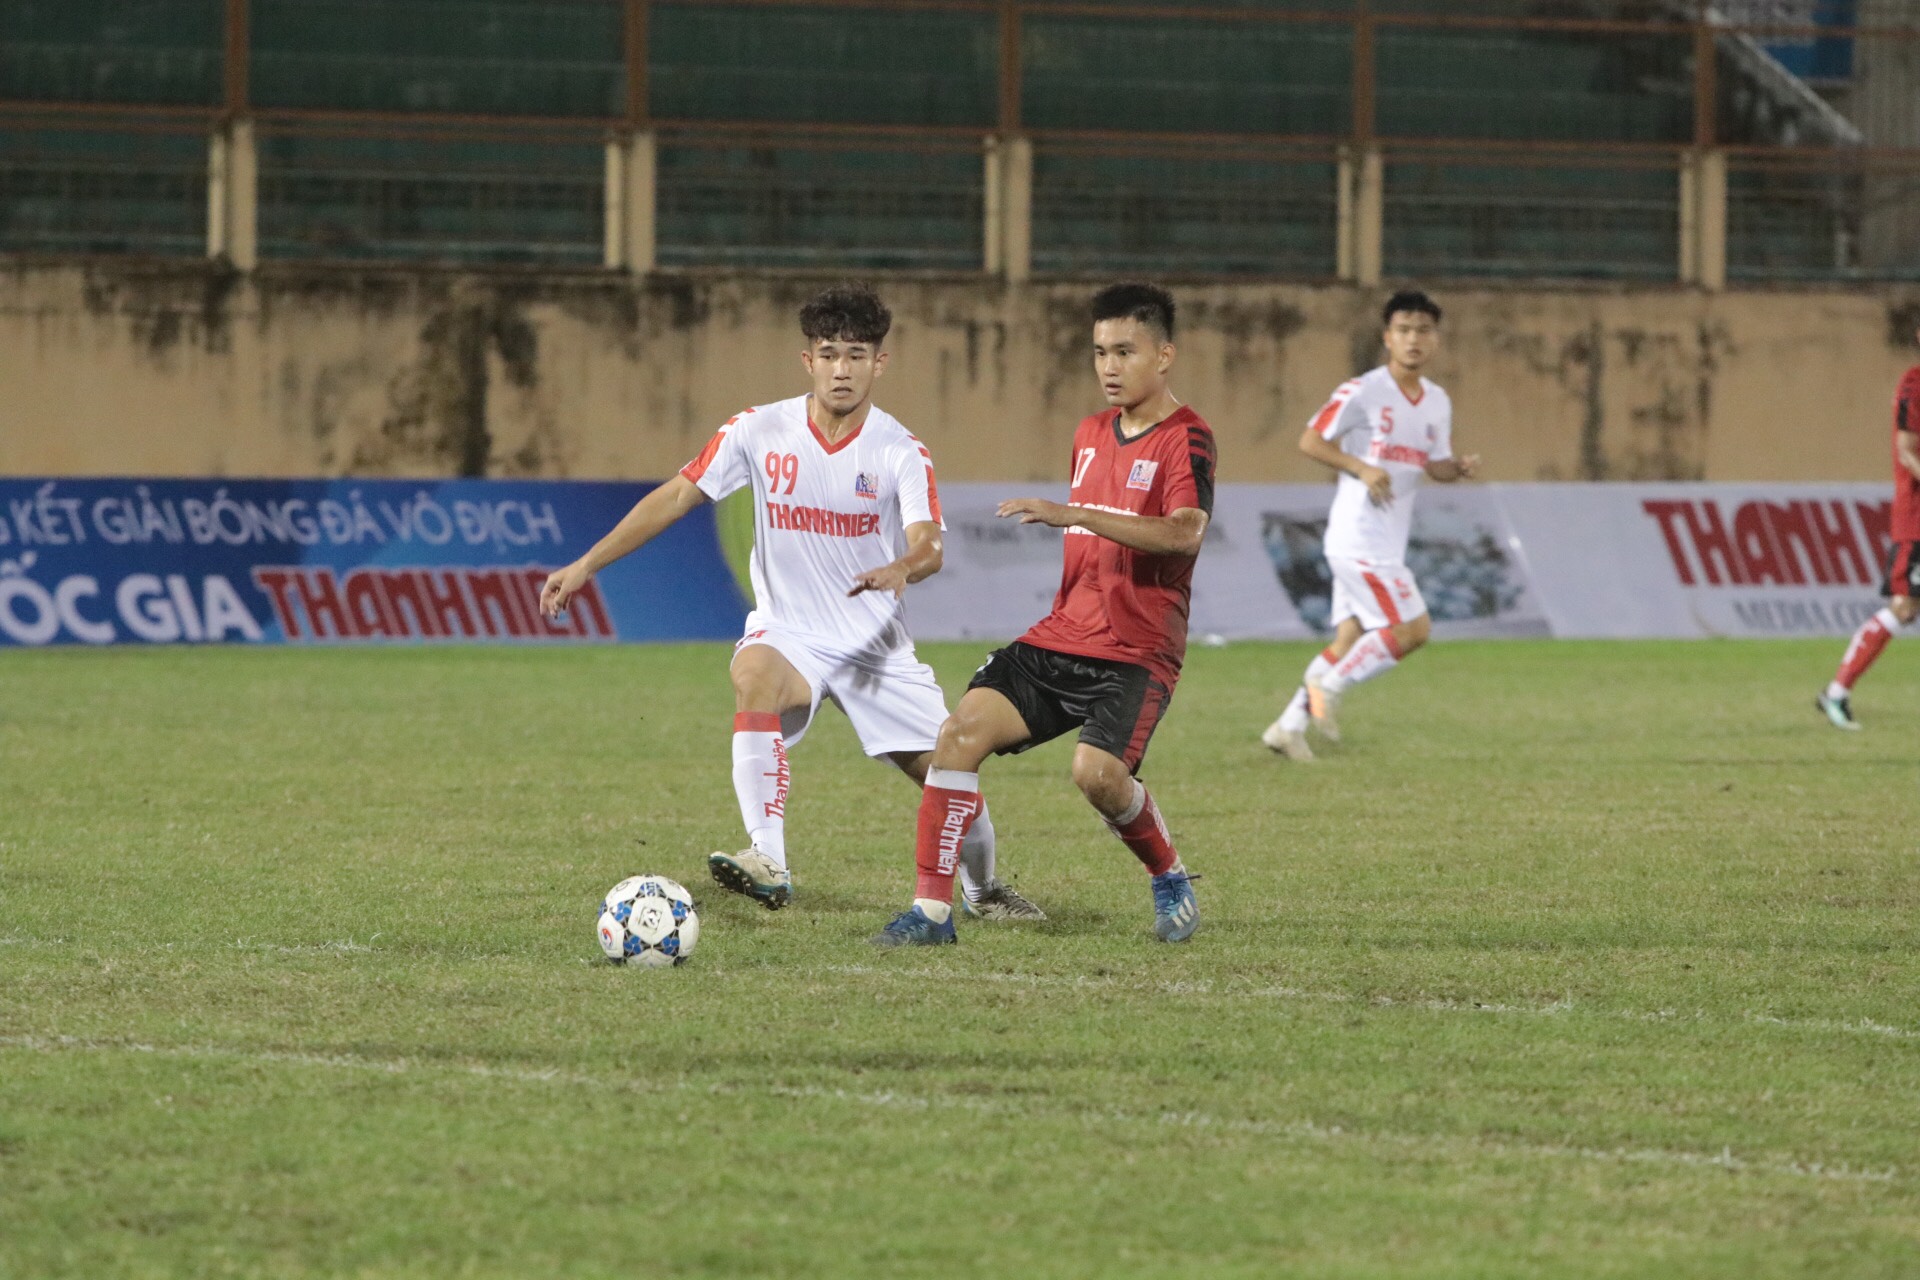 Nguyễn Khánh khai hỏa, U21 Long An vẫn không có điểm trước Viettel - Bóng Đá